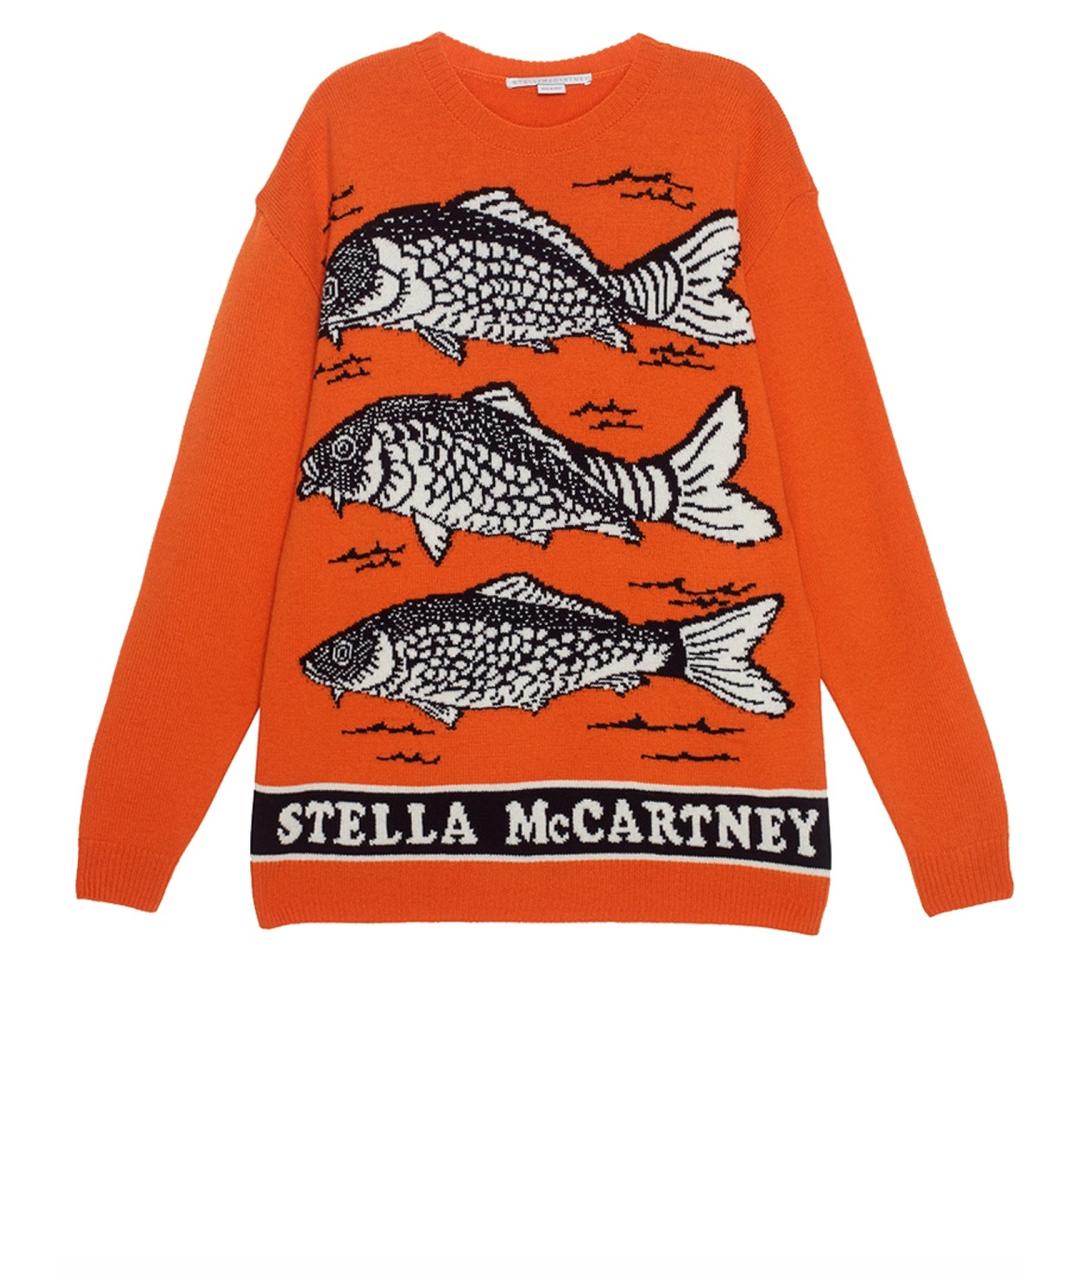 STELLA MCCARTNEY Оранжевый шерстяной джемпер / свитер, фото 1